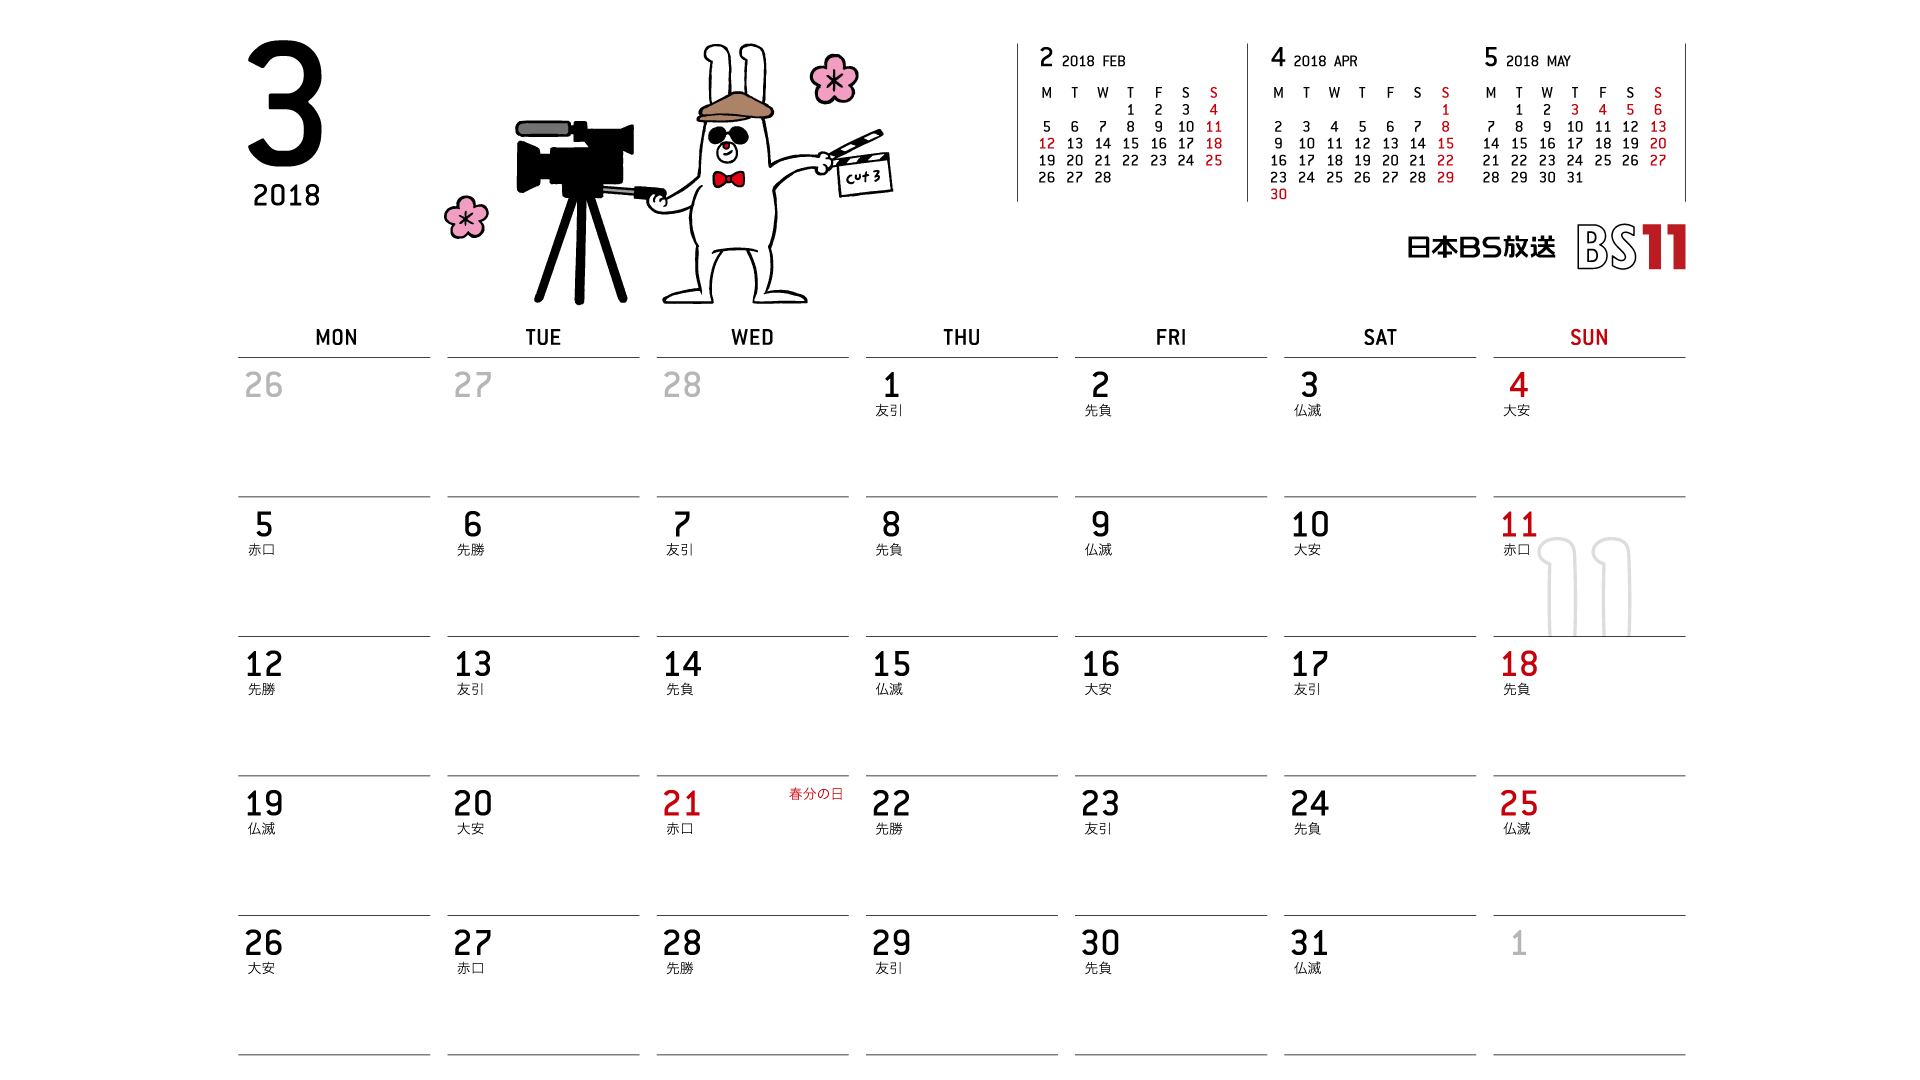 じゅういっちゃんのデジタルカレンダー18年03月 Bs11 イレブン いつでも無料放送